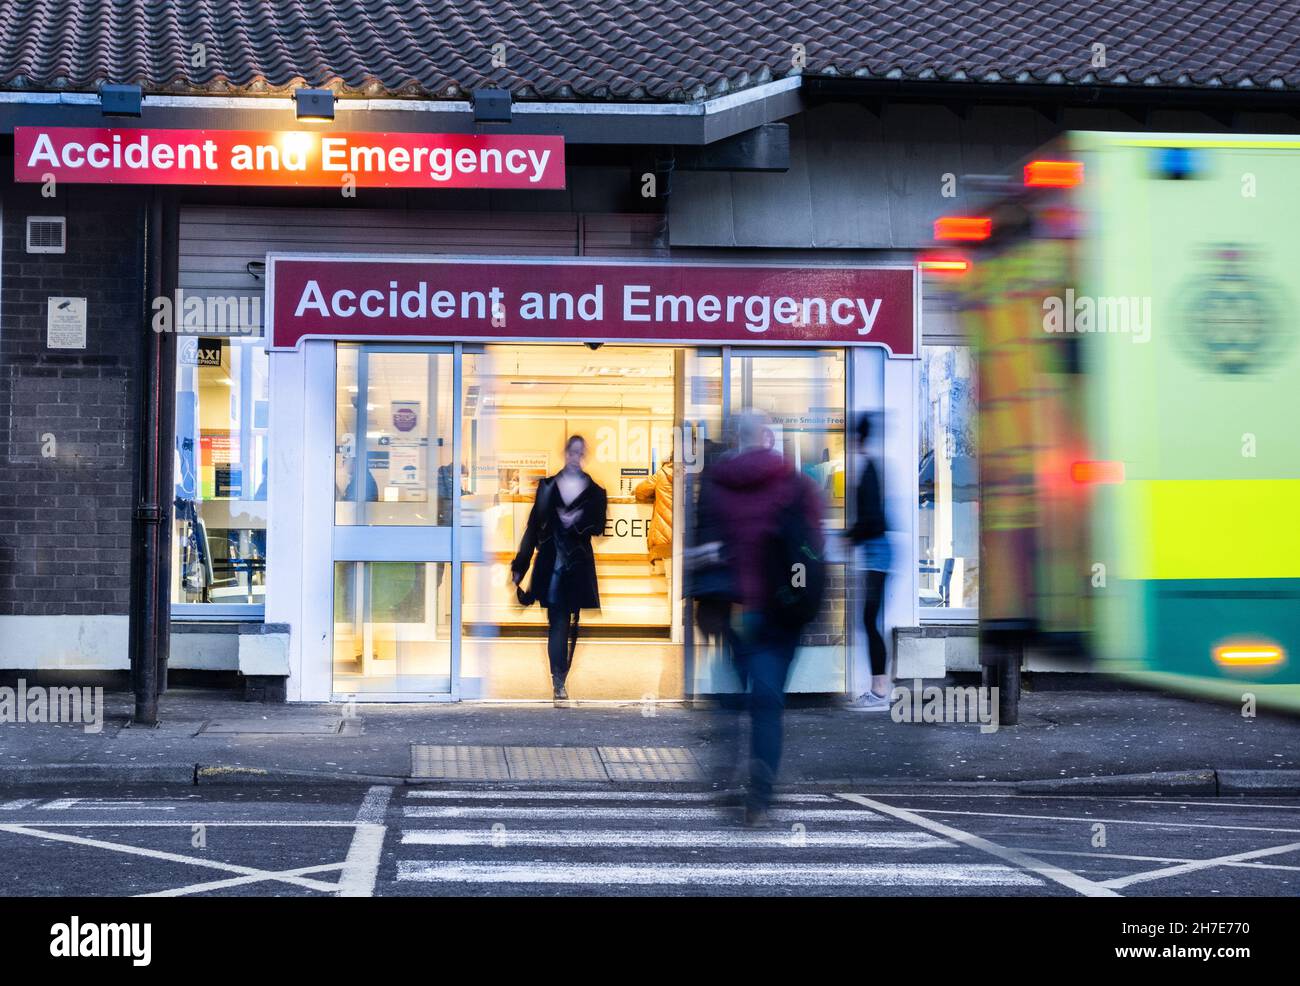 Ambulance et personnes extérieures aux services d'urgence/a&e à l'hôpital universitaire de North Tees, Hardwick Rd, Stockton on Tees, Angleterre, Royaume-Uni Banque D'Images